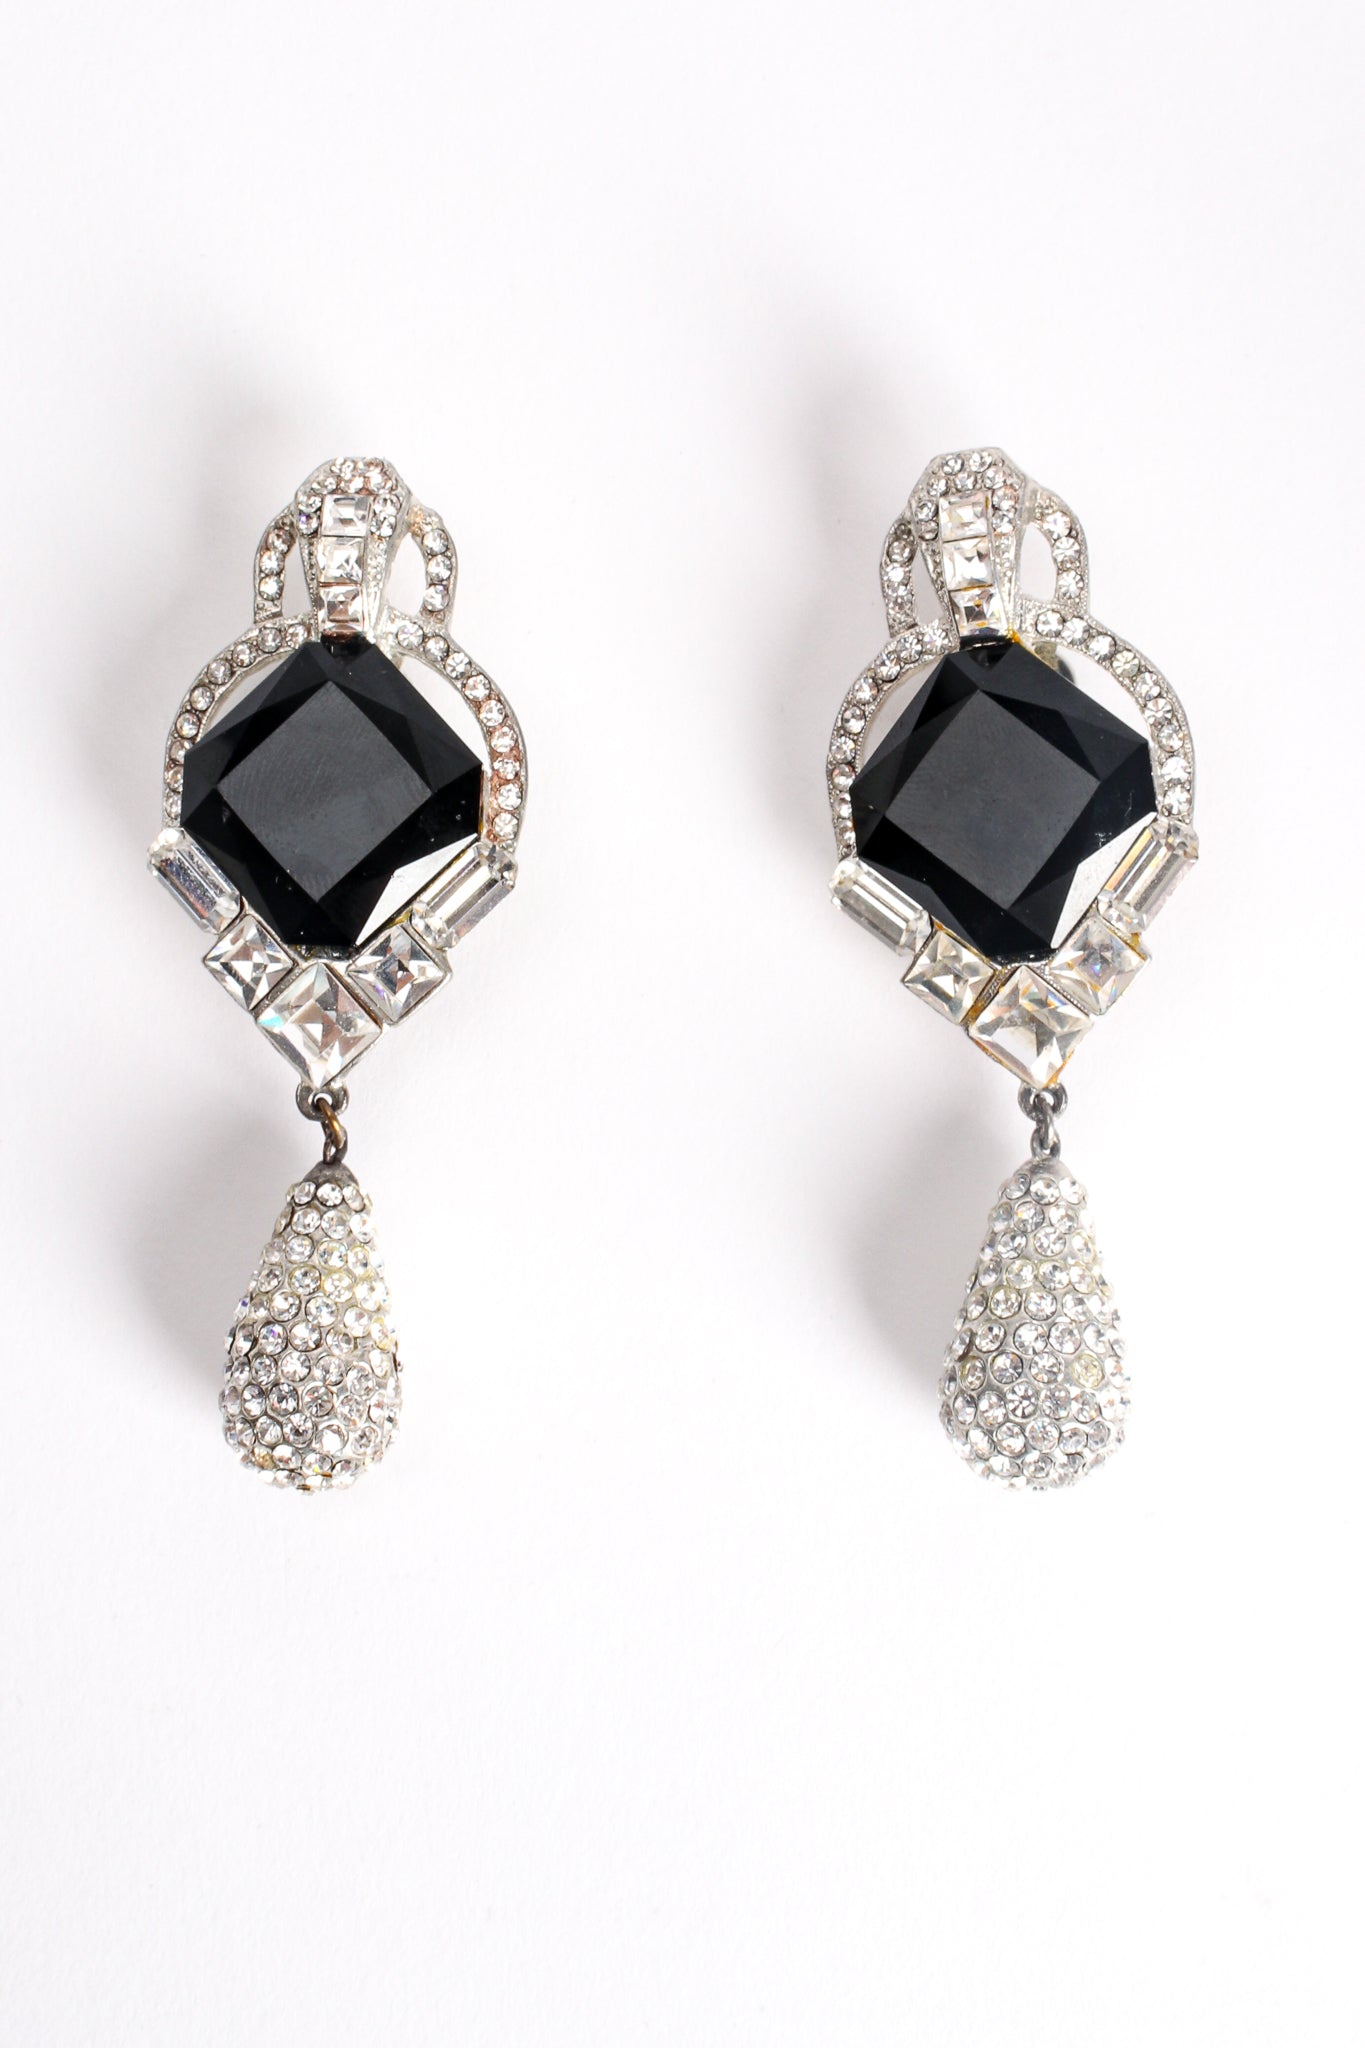 Vintage Beveled Crystal and Rhinestone Teardrop Earrings at Recess Los Angeles